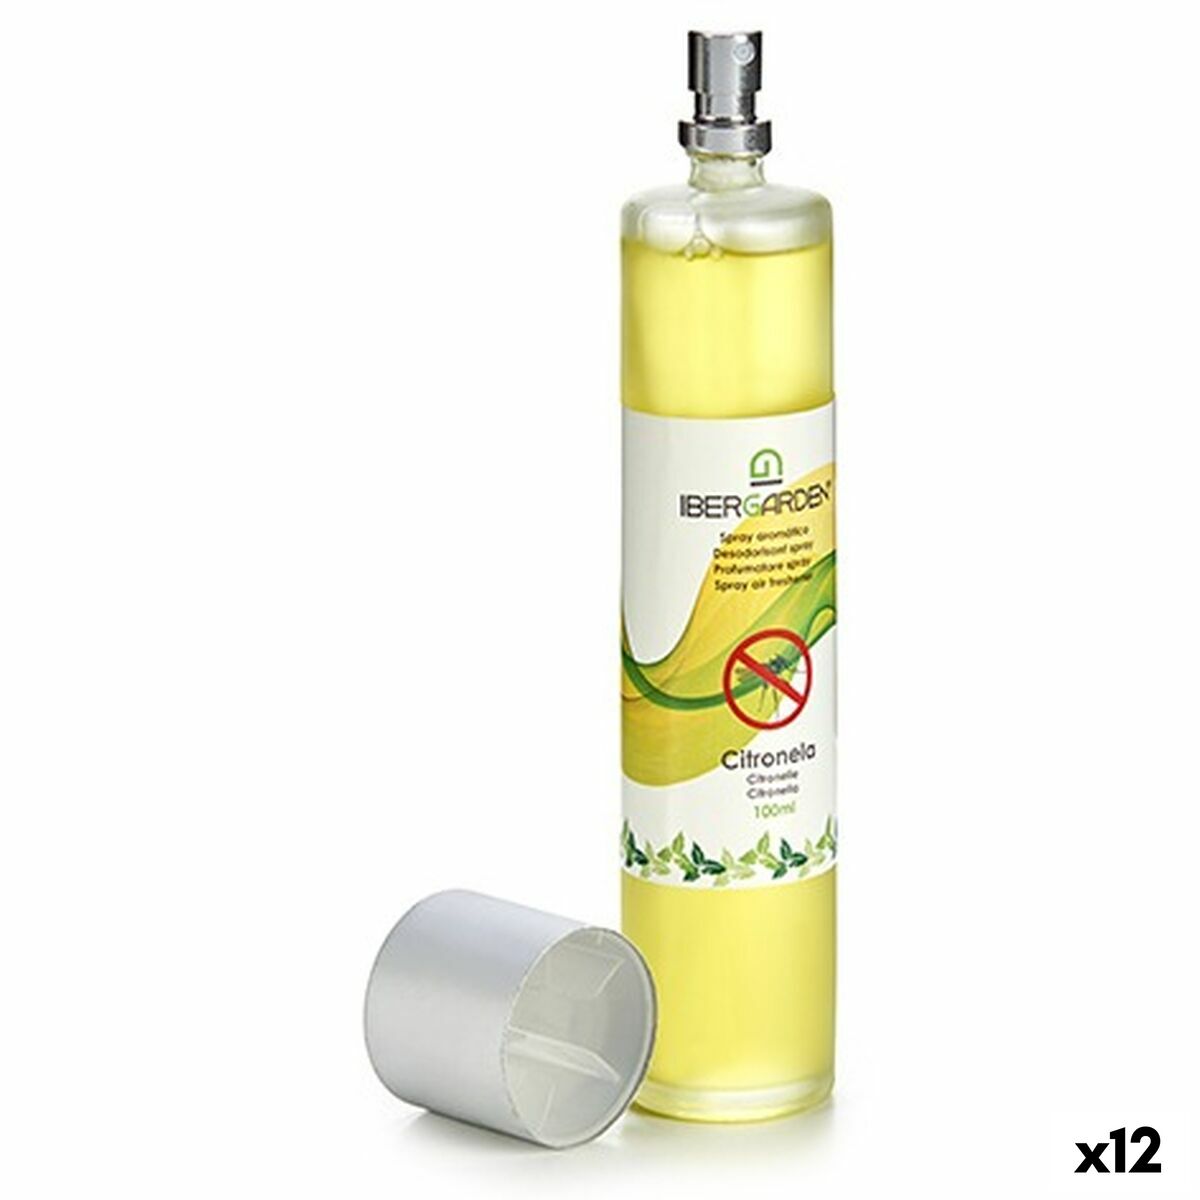 Diffusore Spray Per Ambienti Citronella 100 ml (12 Unità)